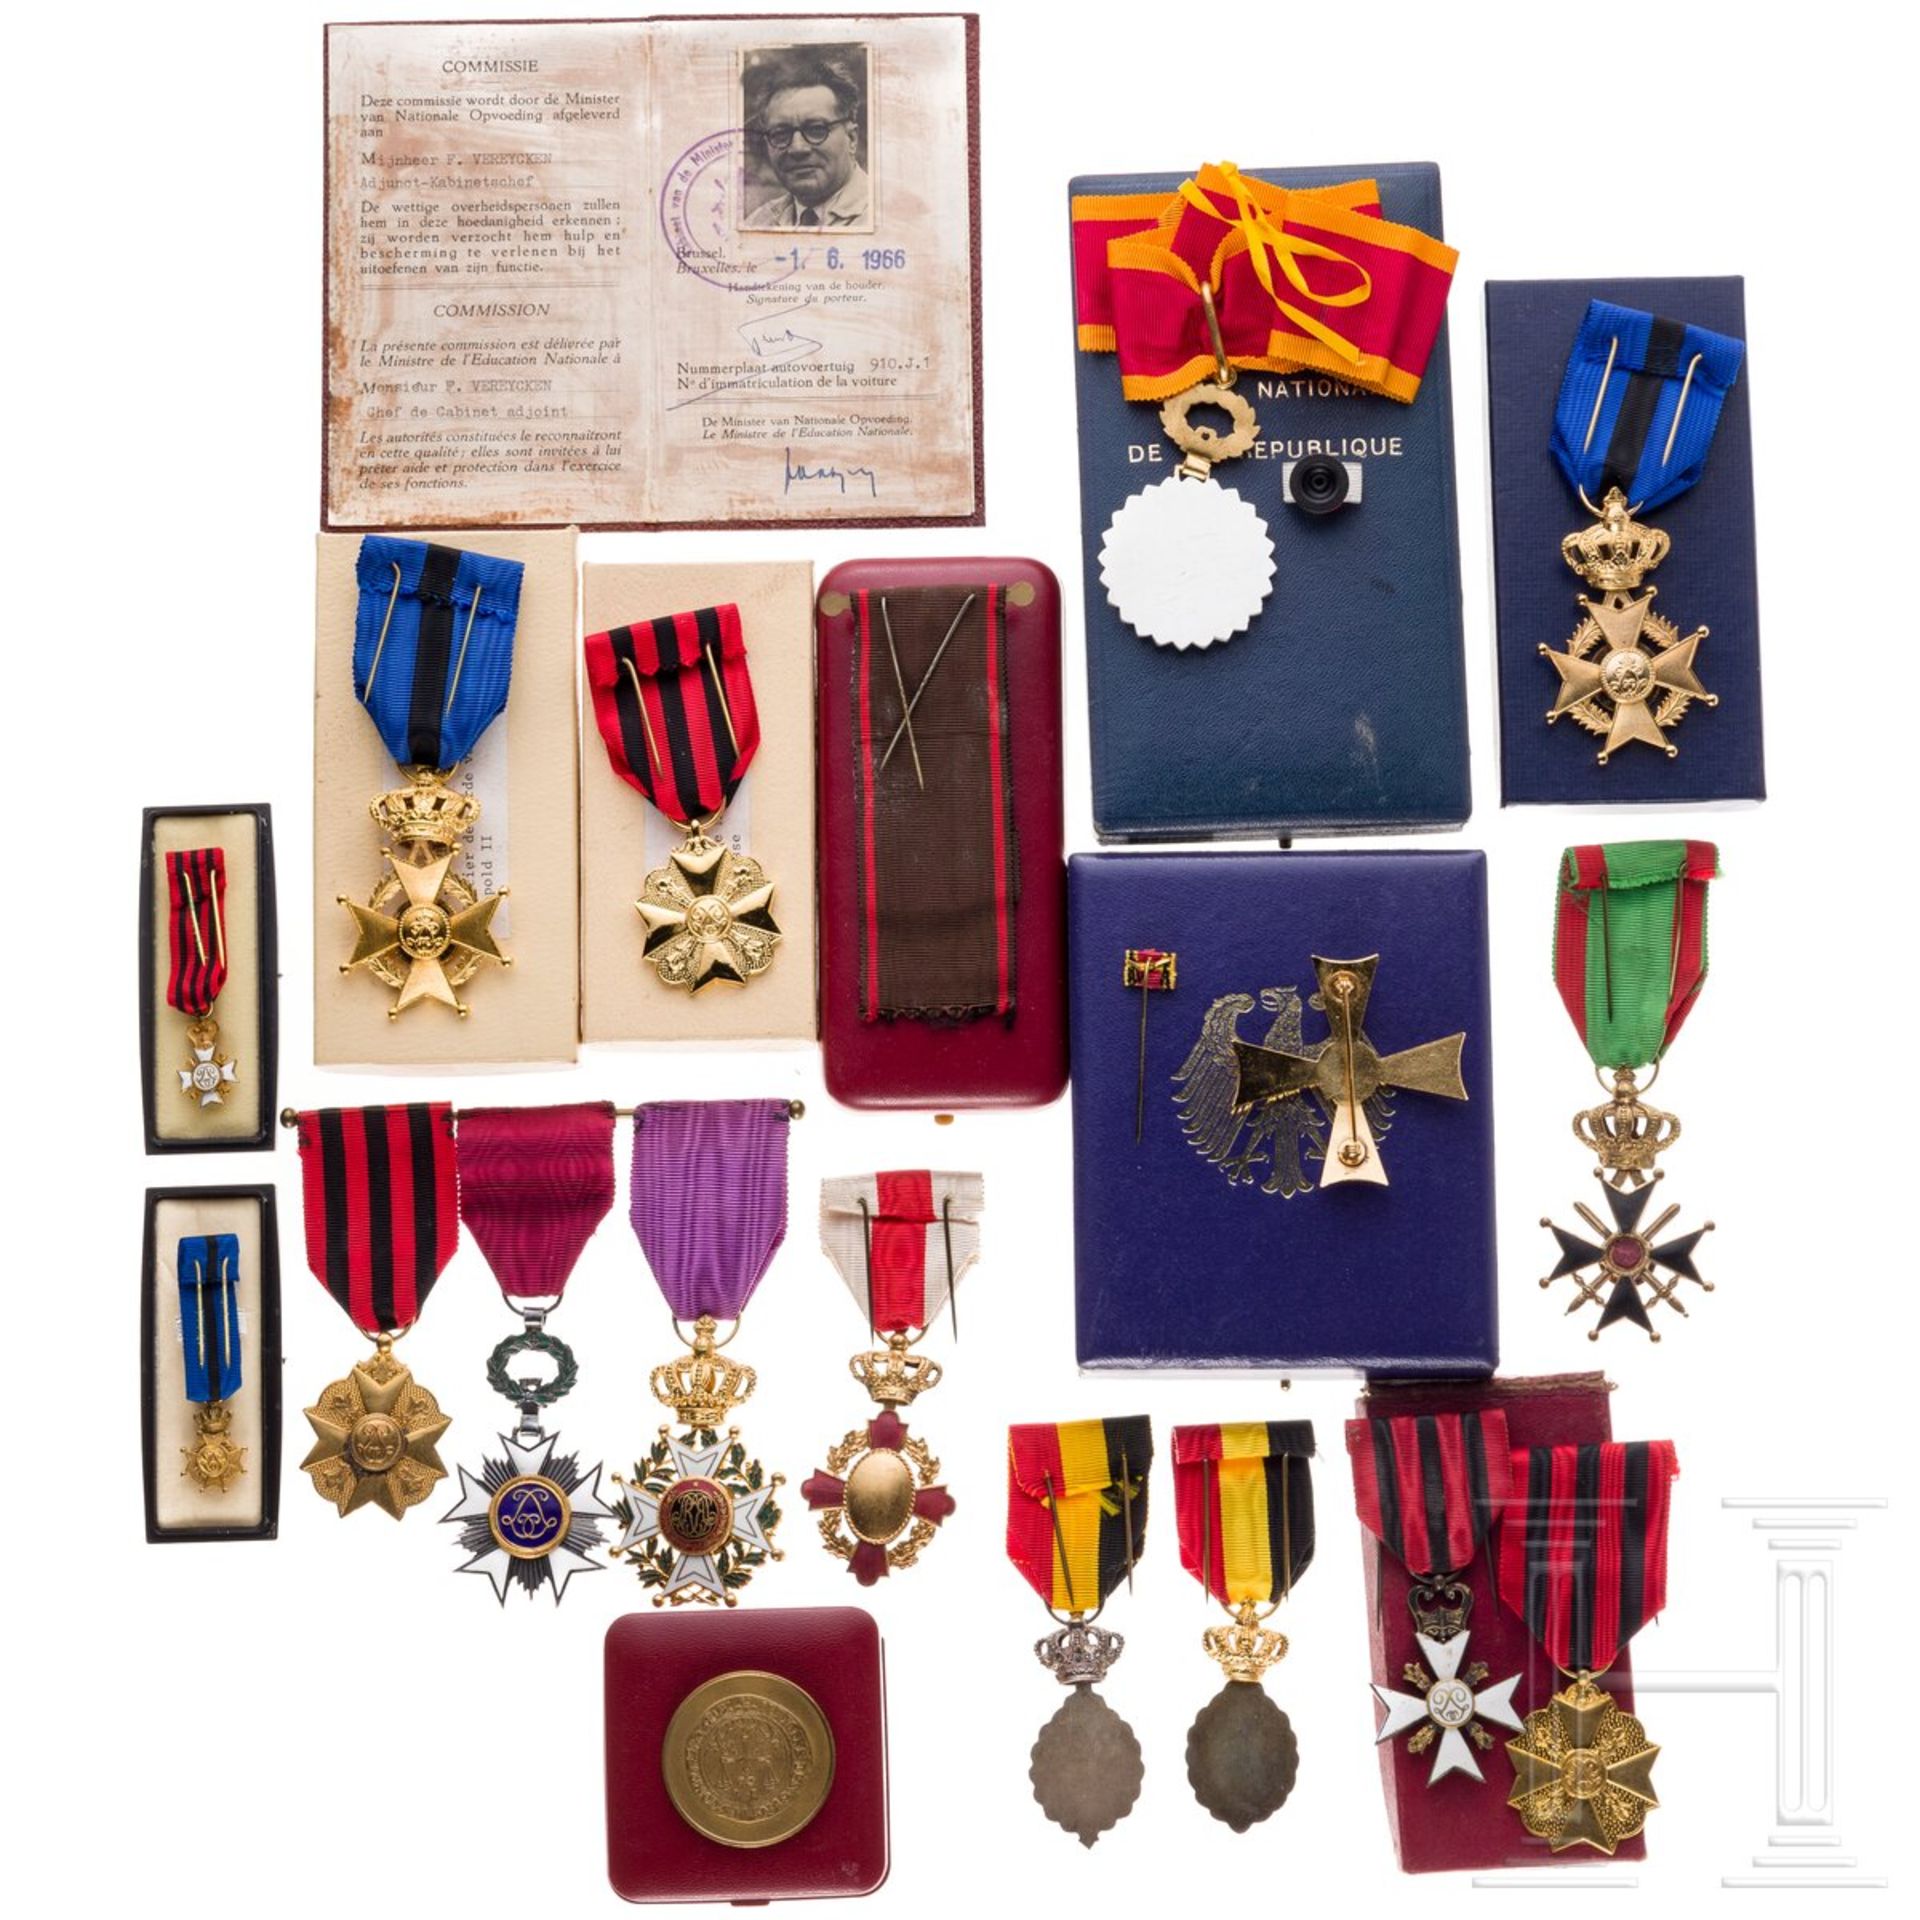 Sammlung Auszeichnungen, Belgien, 20. Jhdt., dazu Bundesverdienstkreuz - Bild 2 aus 2